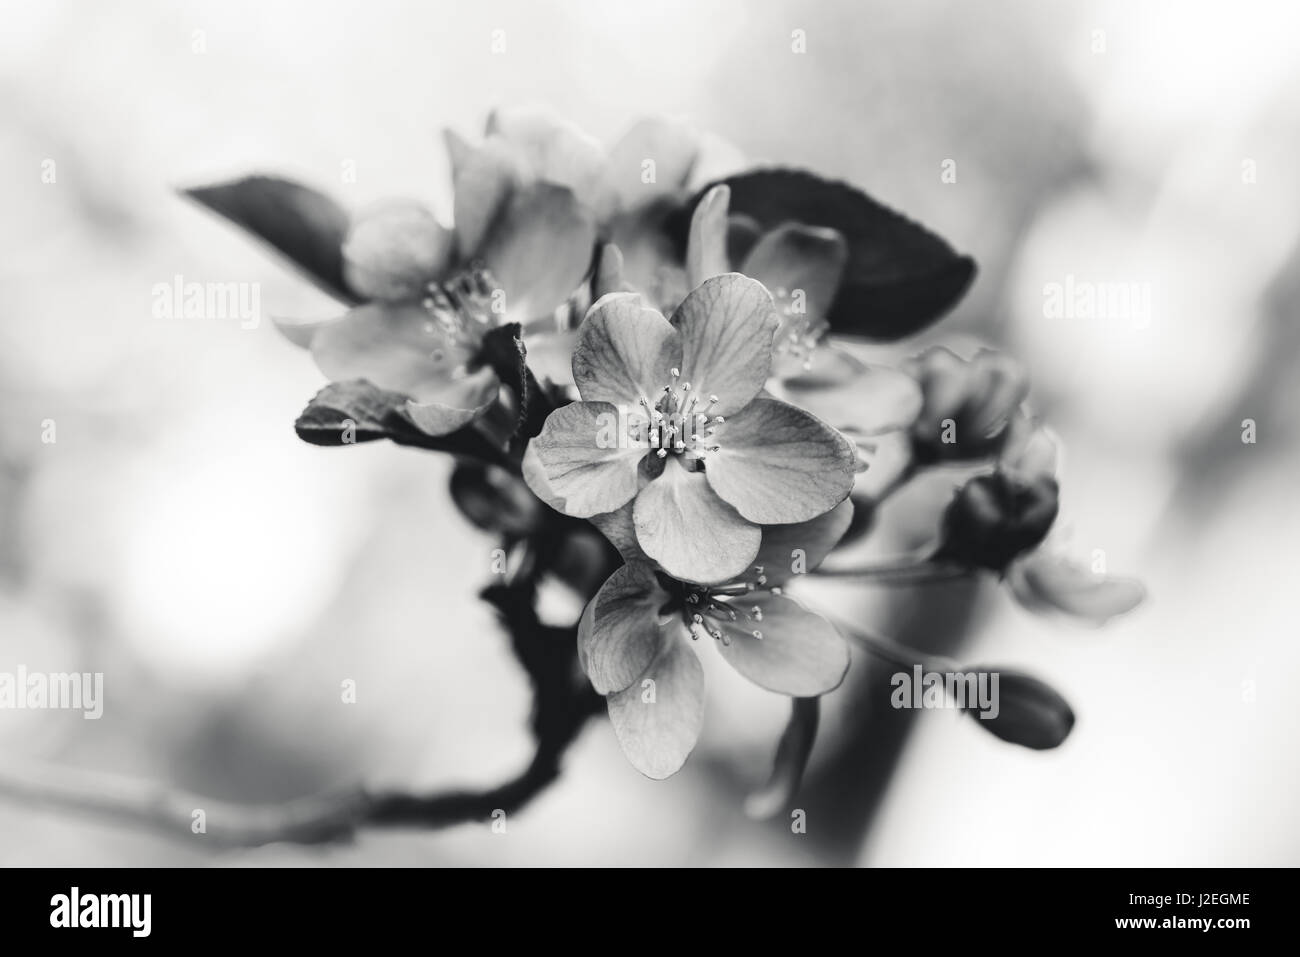 Immagine in bianco e nero di fiori in fiore. Foto Stock